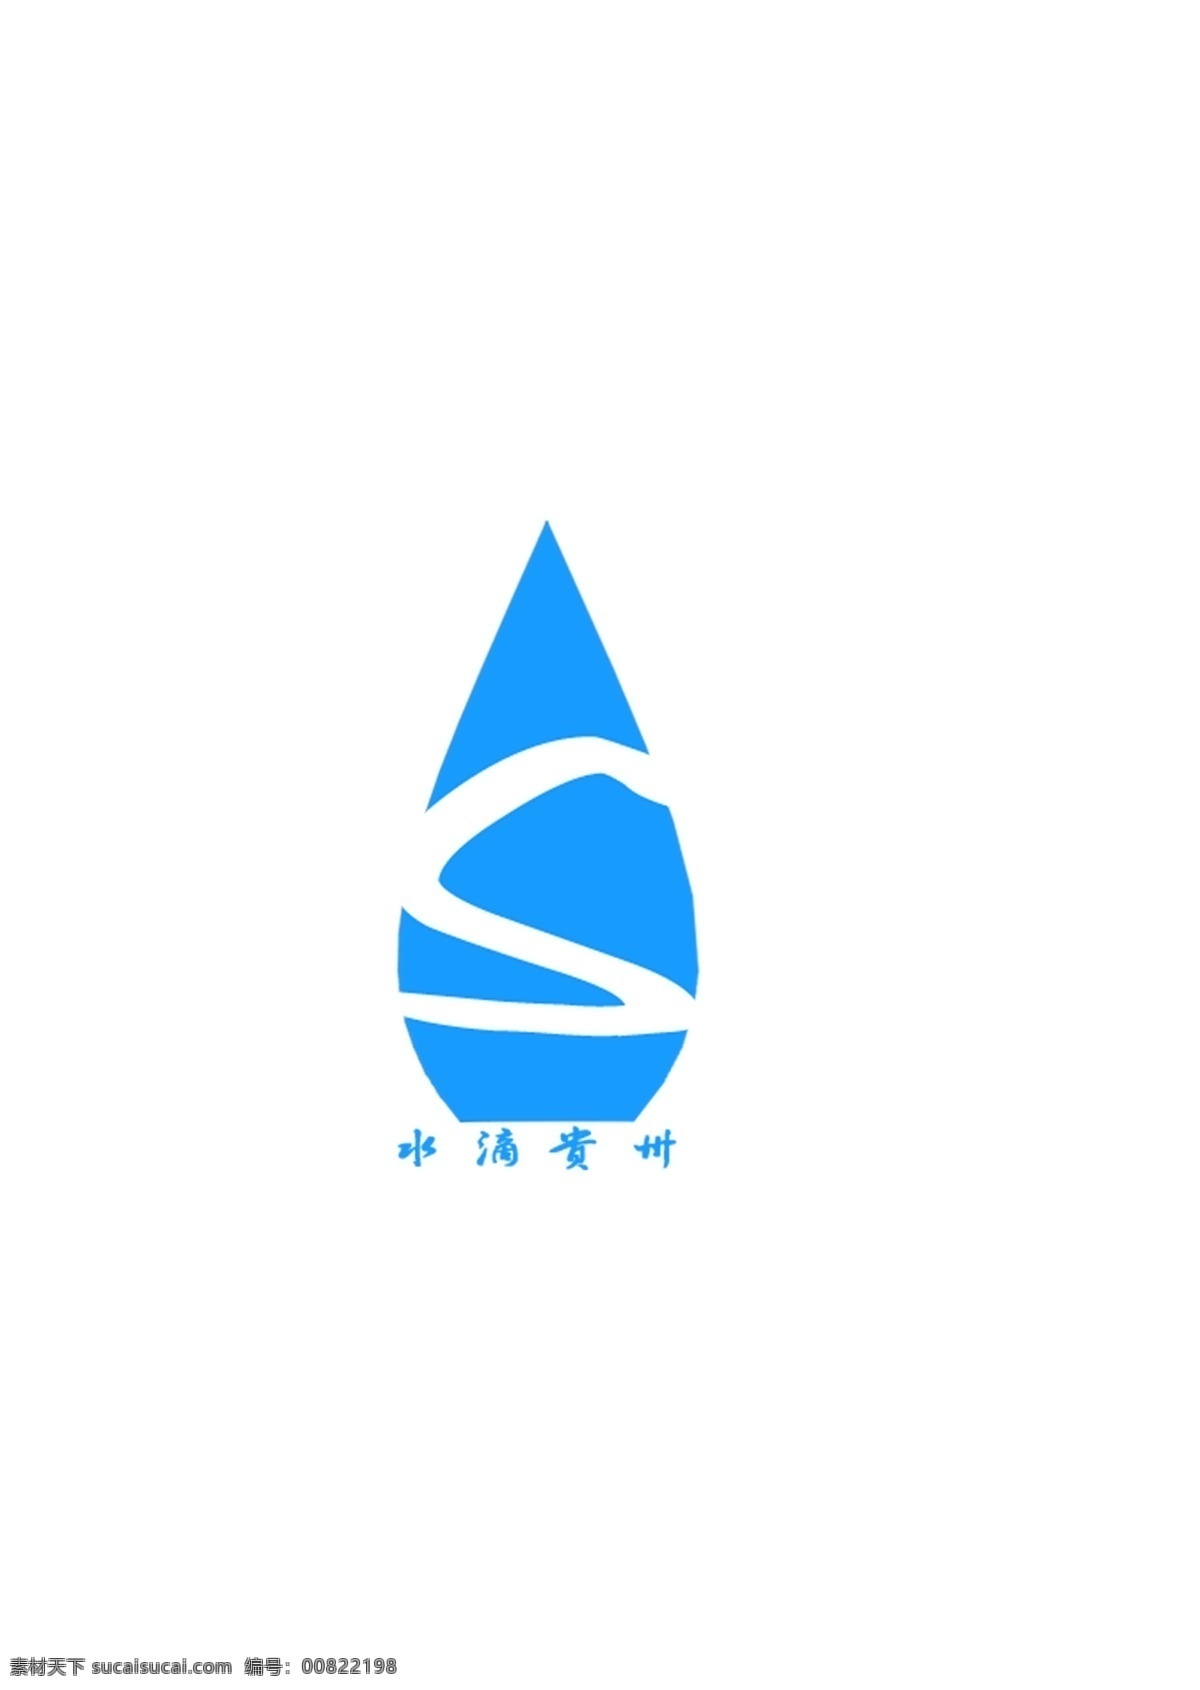 水滴贵州 蓝色logo 贵州 logo s文字合成 水滴 分层